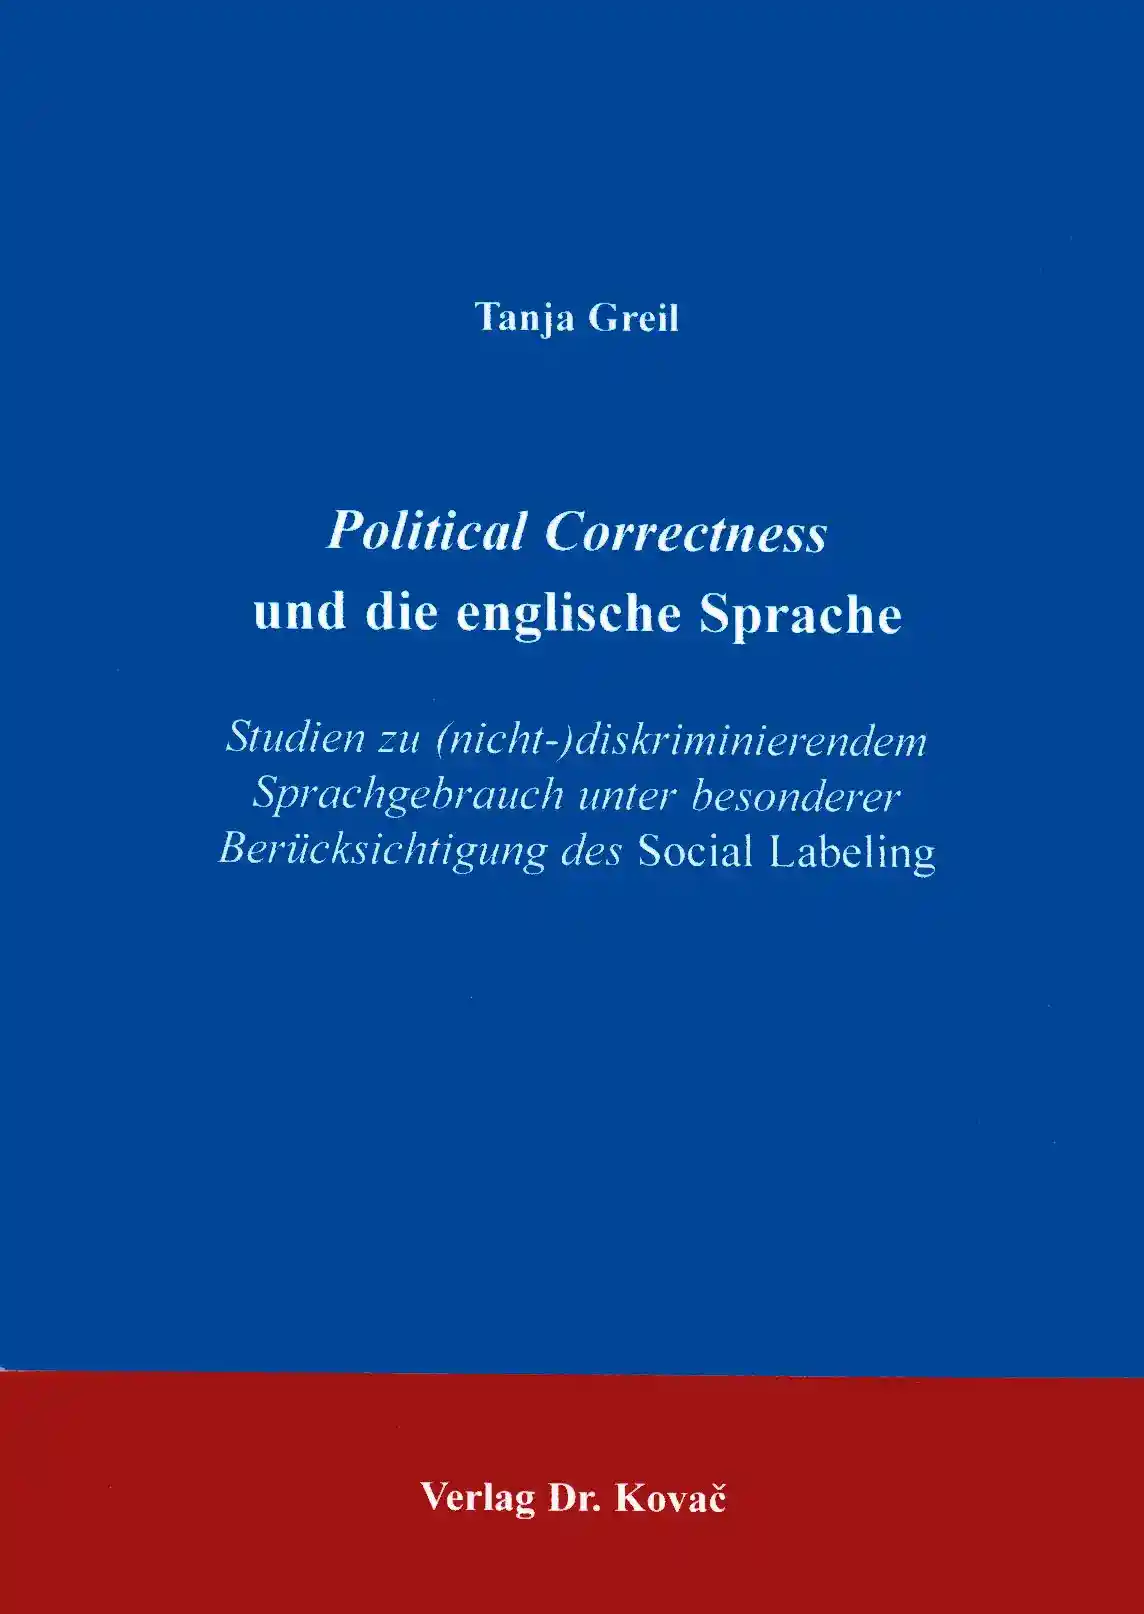  Dissertation: Political Correctness und die englische Sprache